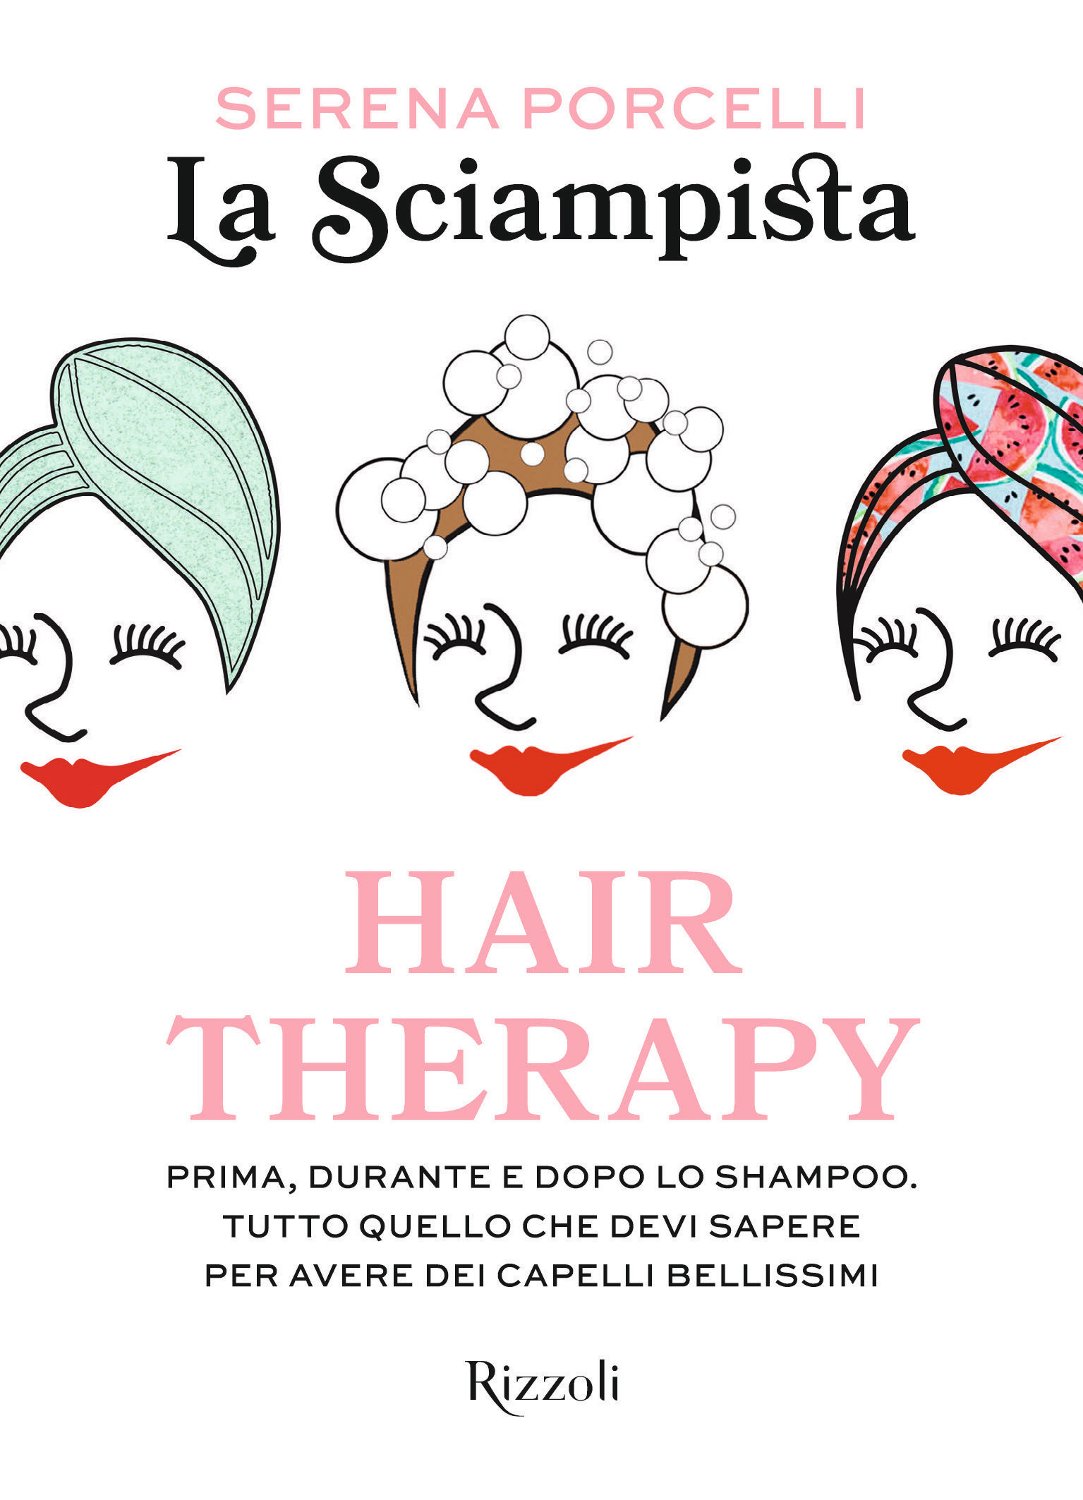 Hair Therapy, dai capelli la terapia dell'anima lanciata da La Sciampista.  - Gazzetta di Milano